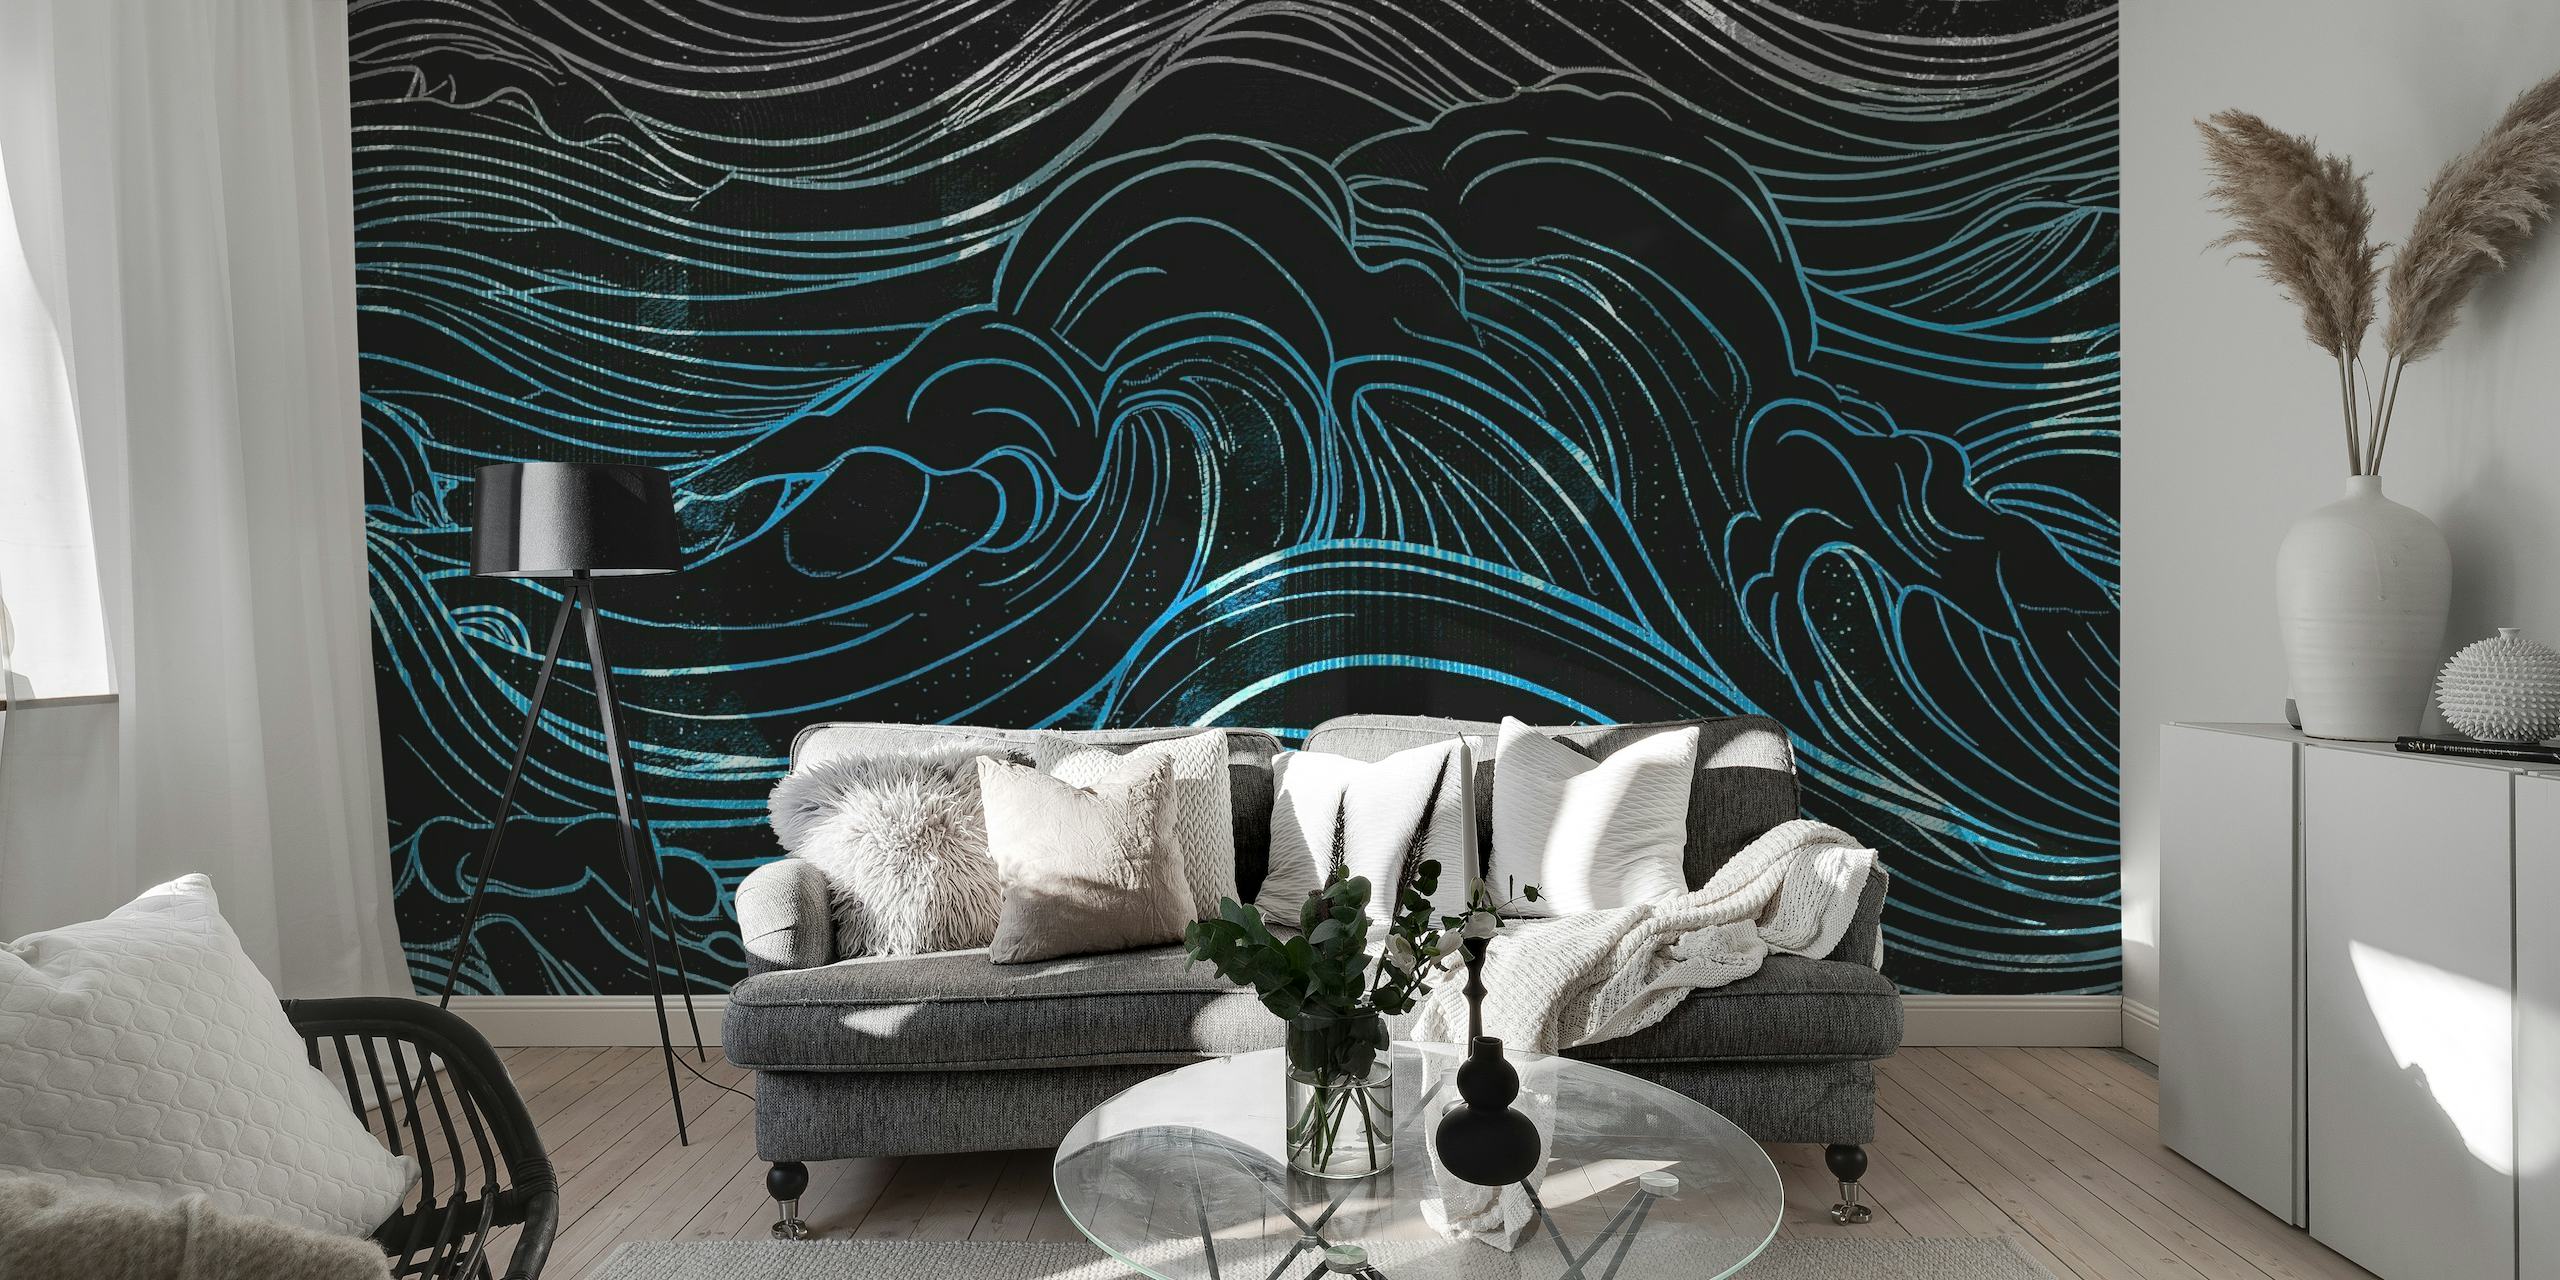 Moody Night Waves papel pintado